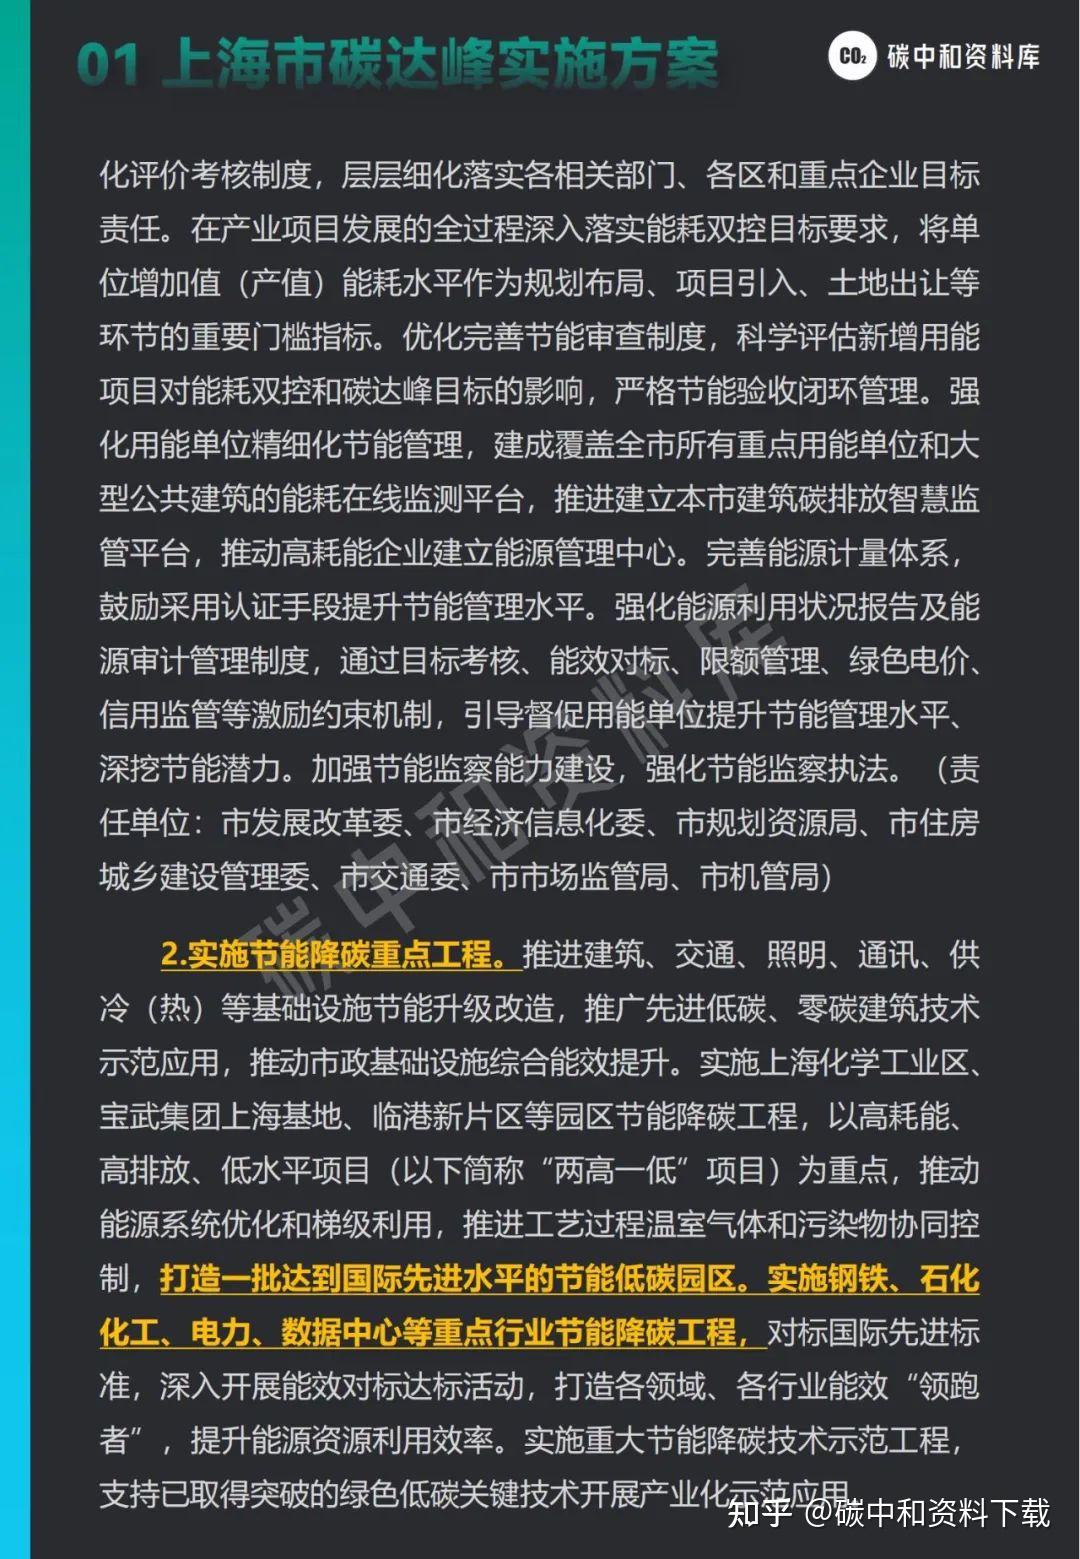 中国石化准入控制客户端中国石化网络应用中心官网